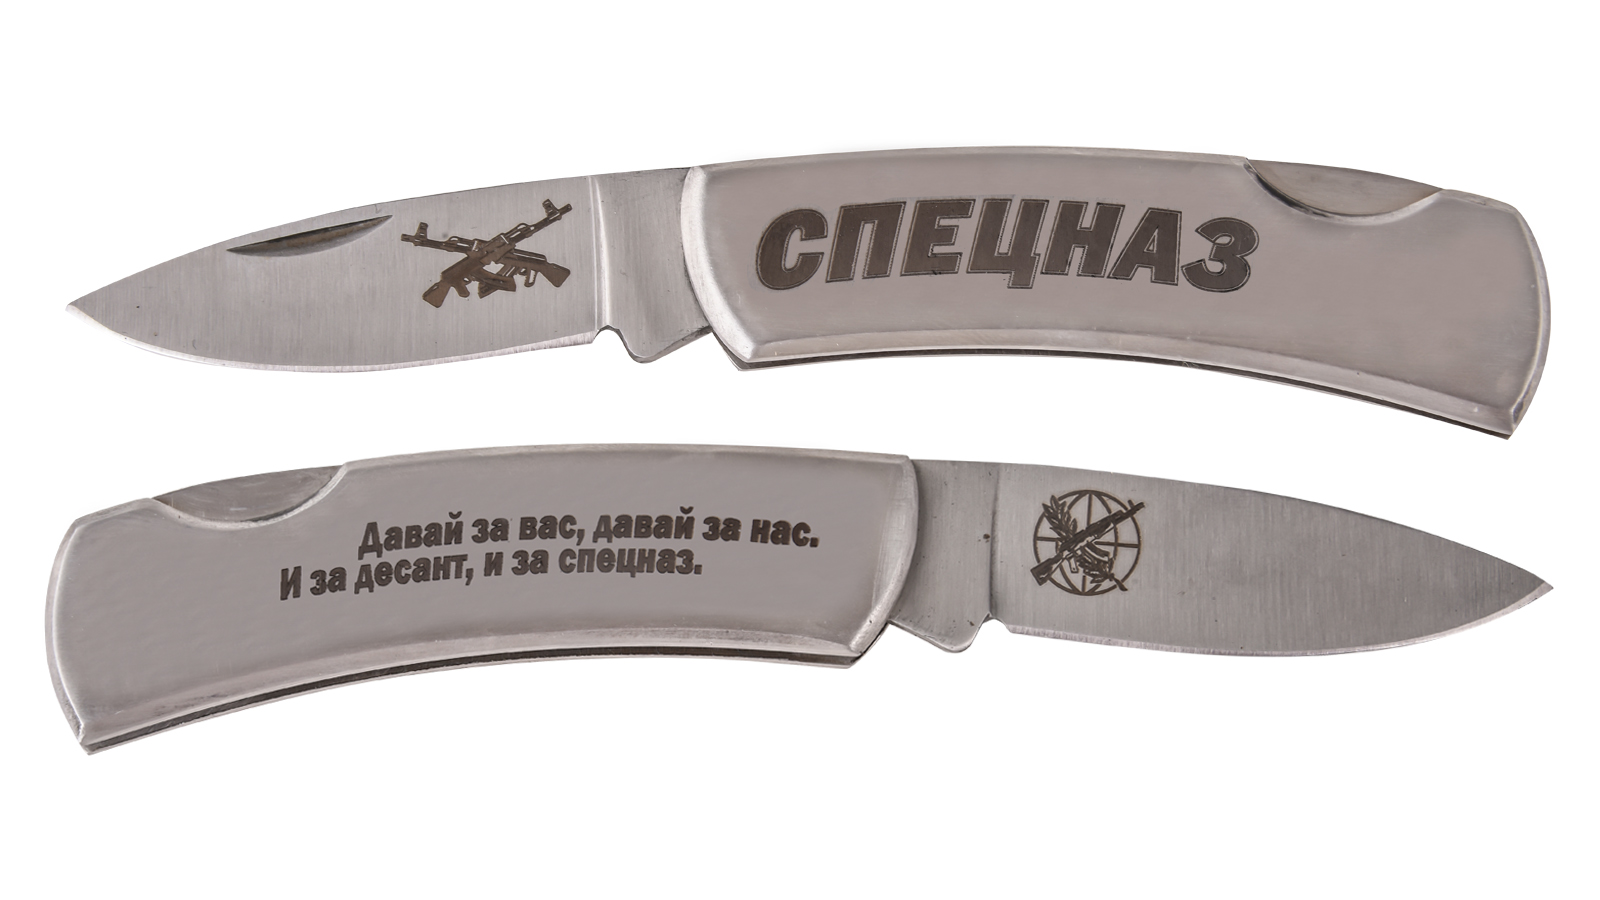 Купить оригинальный нож с символикой Спецназа недорого в Военпро